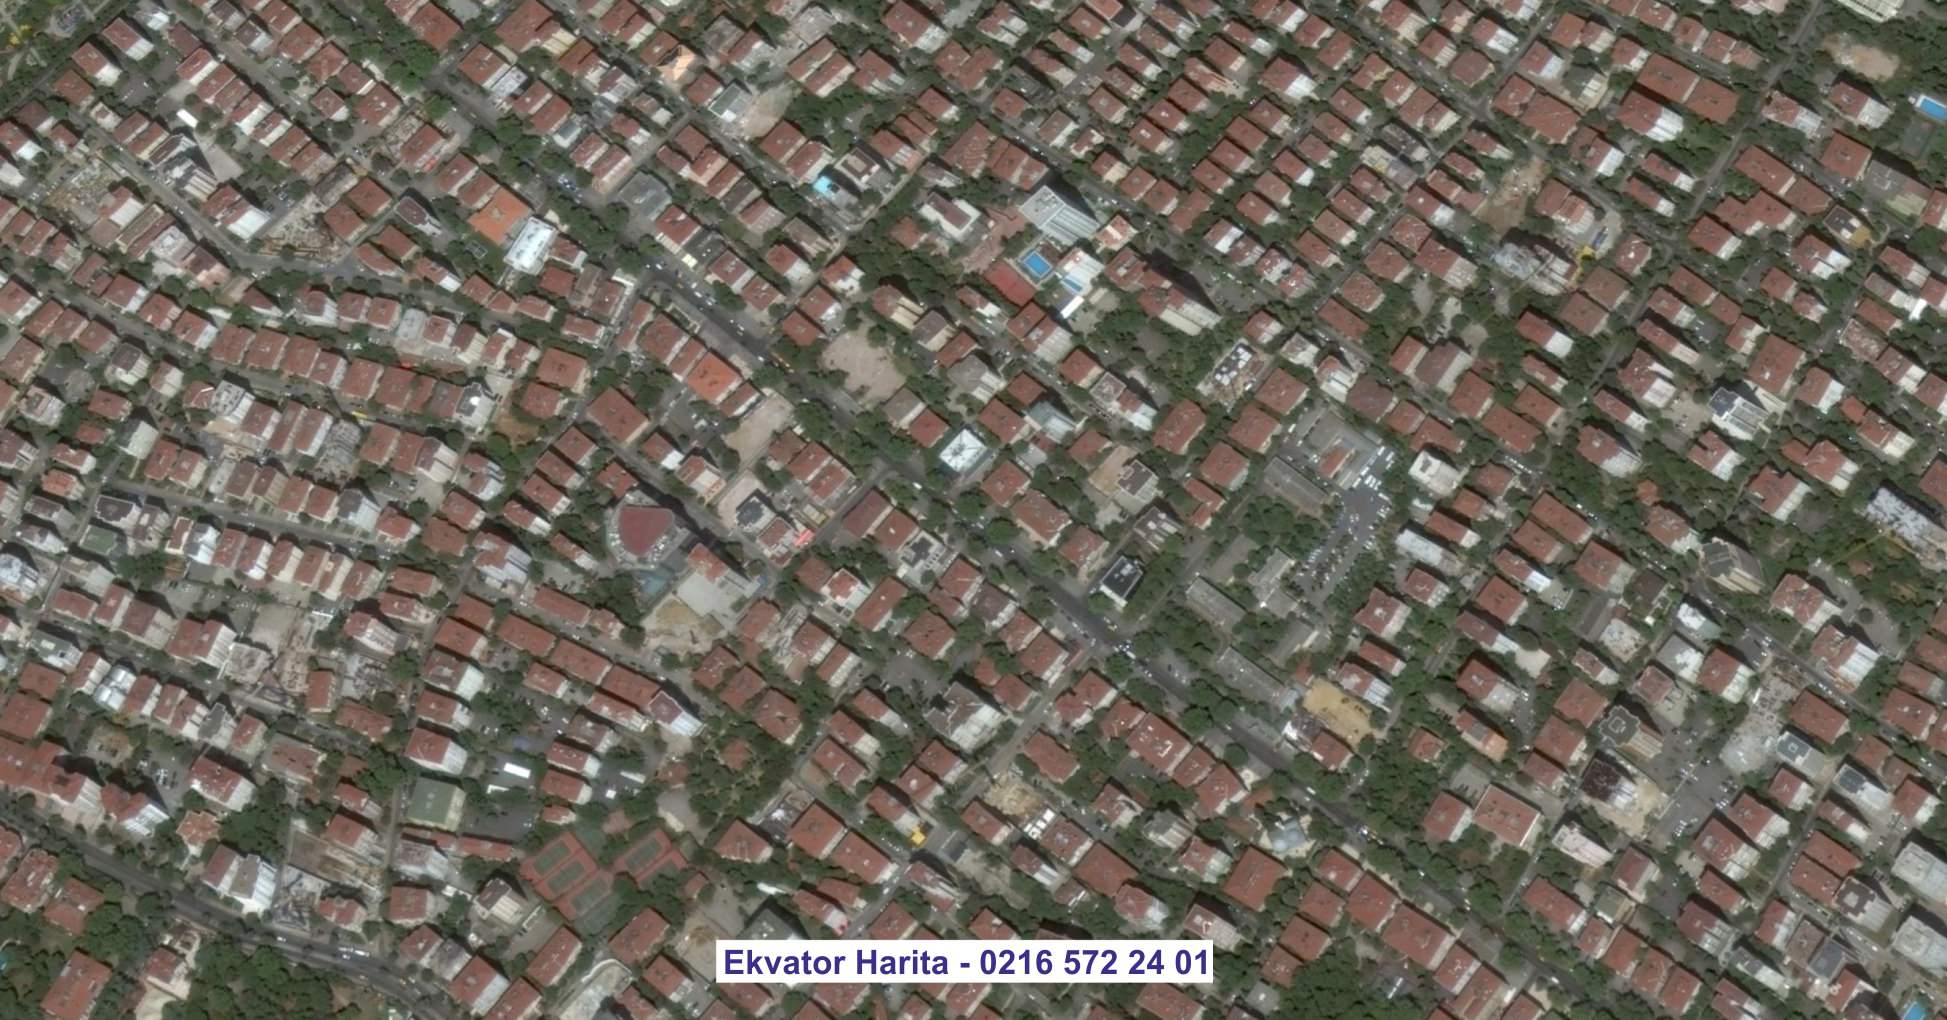 Yozgat Uydu Görüntüsü Örnek Fotoğrafı